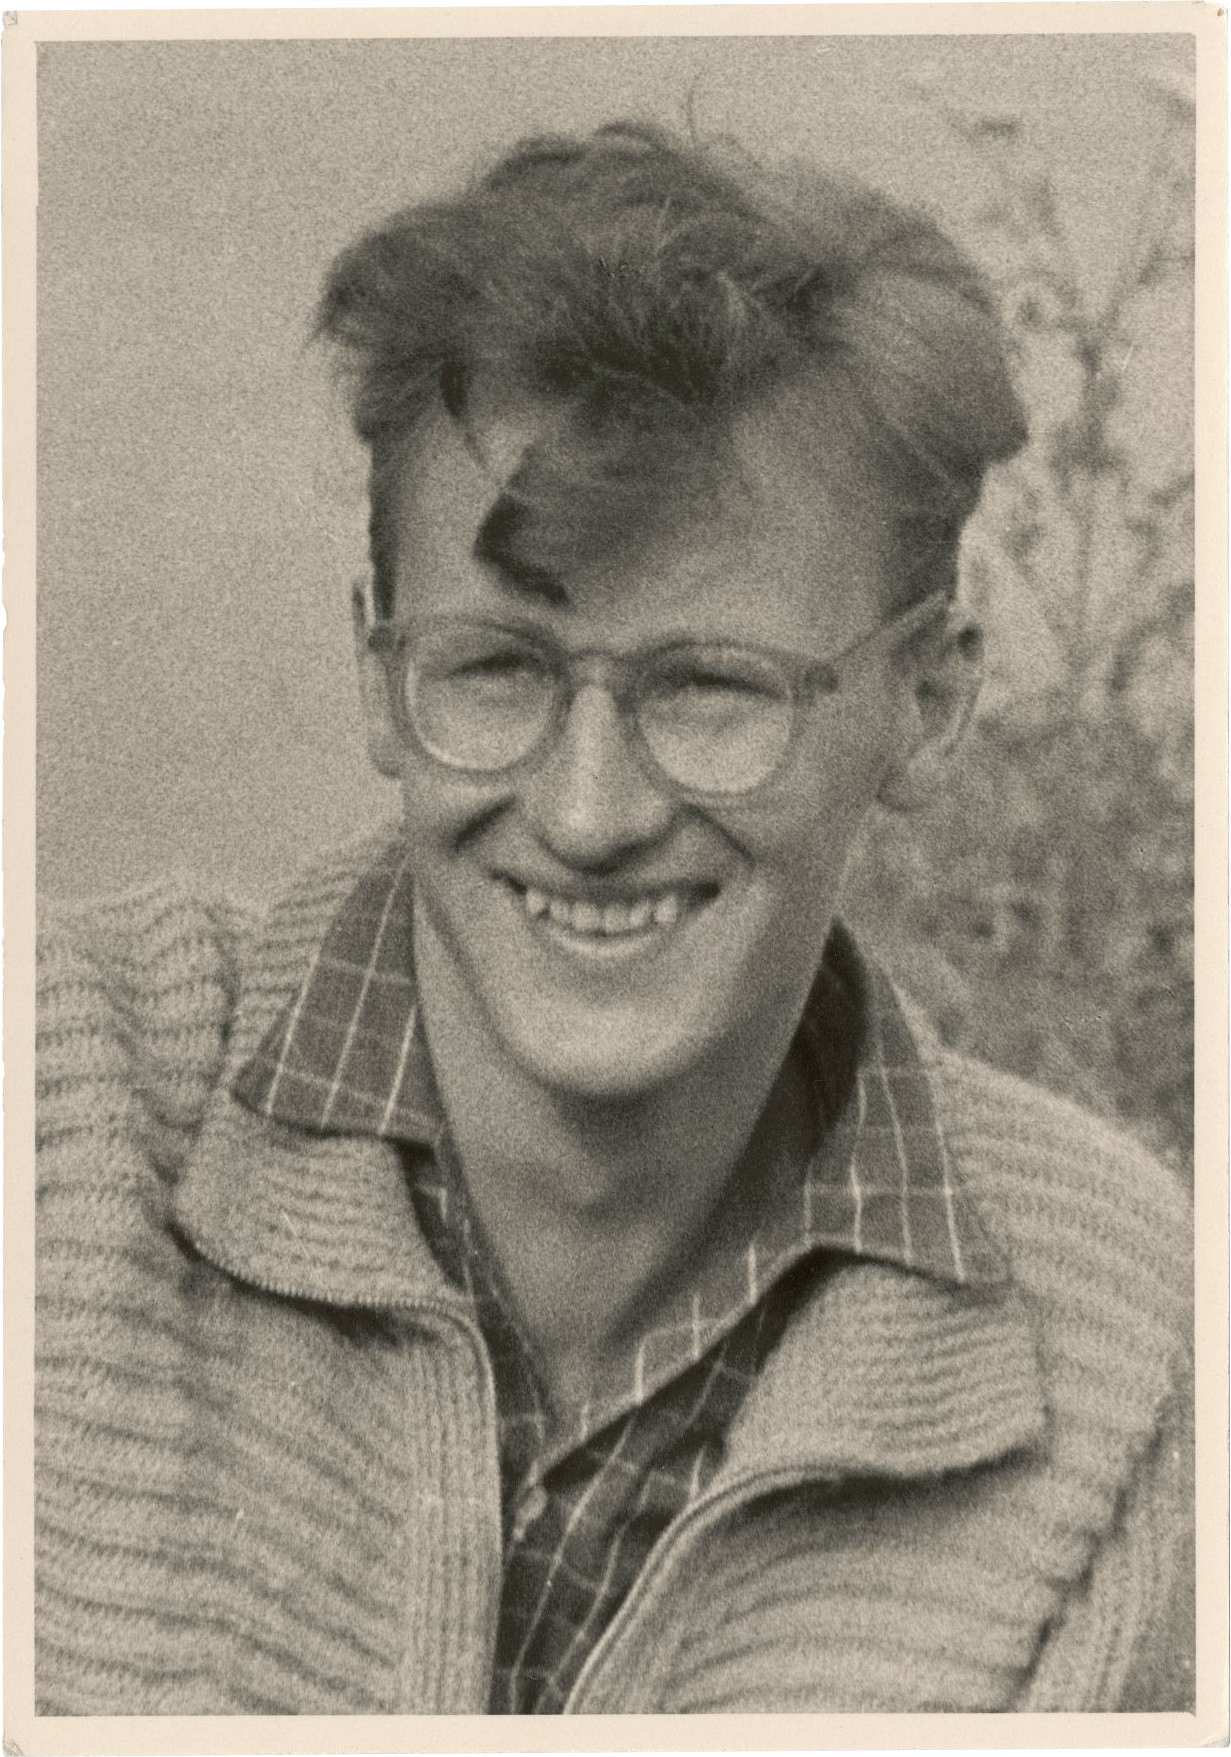 Porträtfoto von Lutz Rackow, ca. 23 jahre alt. Er trägt ein karriertes Hemd, mit einer Wolljacke darüber und eine Brille. Die lockigen, mittellangen Haare fallen teilweise ins Gesicht. Er schaut leicht an der Kamera vorbei und lächelt.